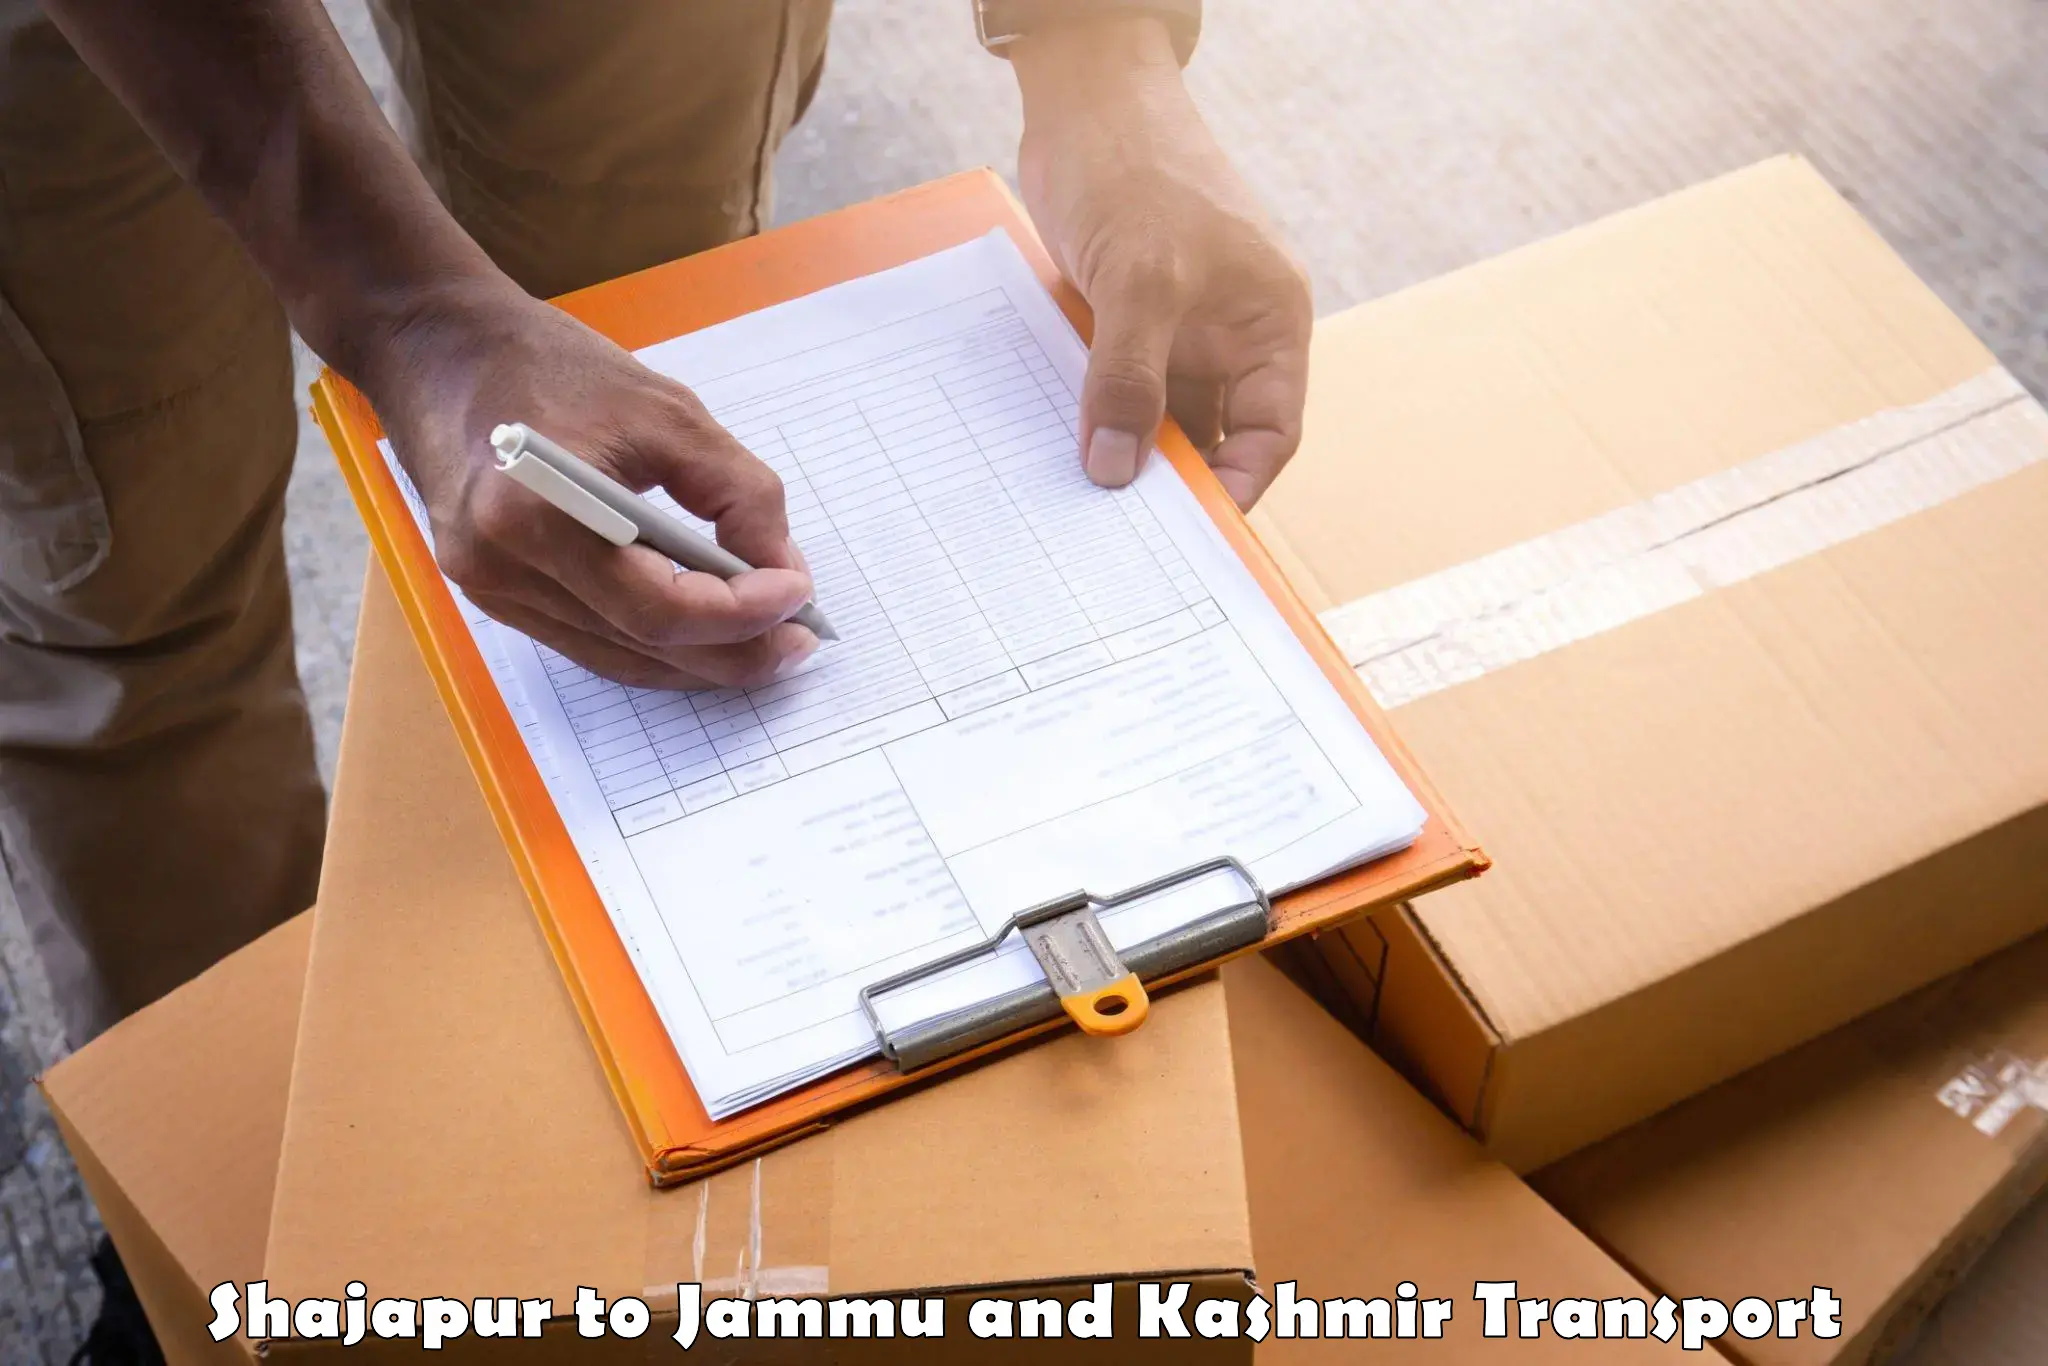 Two wheeler parcel service Shajapur to Kargil